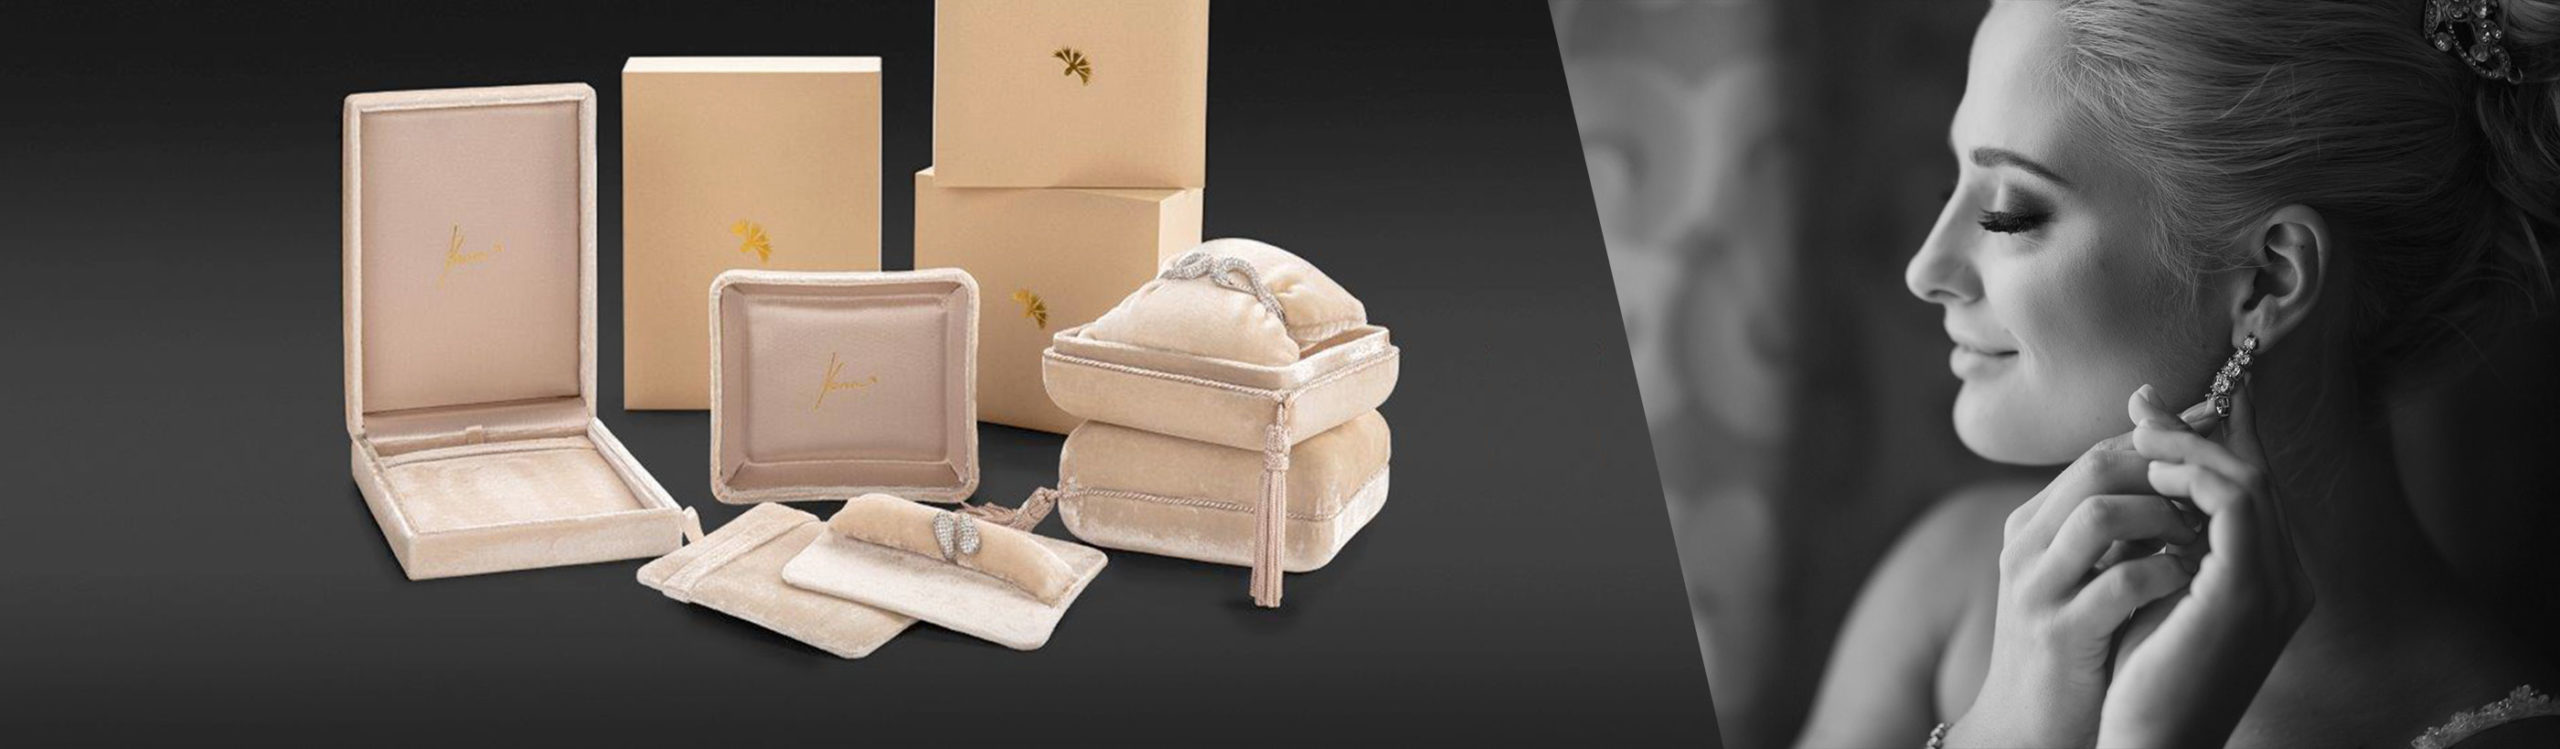 Astucci Per Gioielli E Packaging Personalizzato Jewelbox